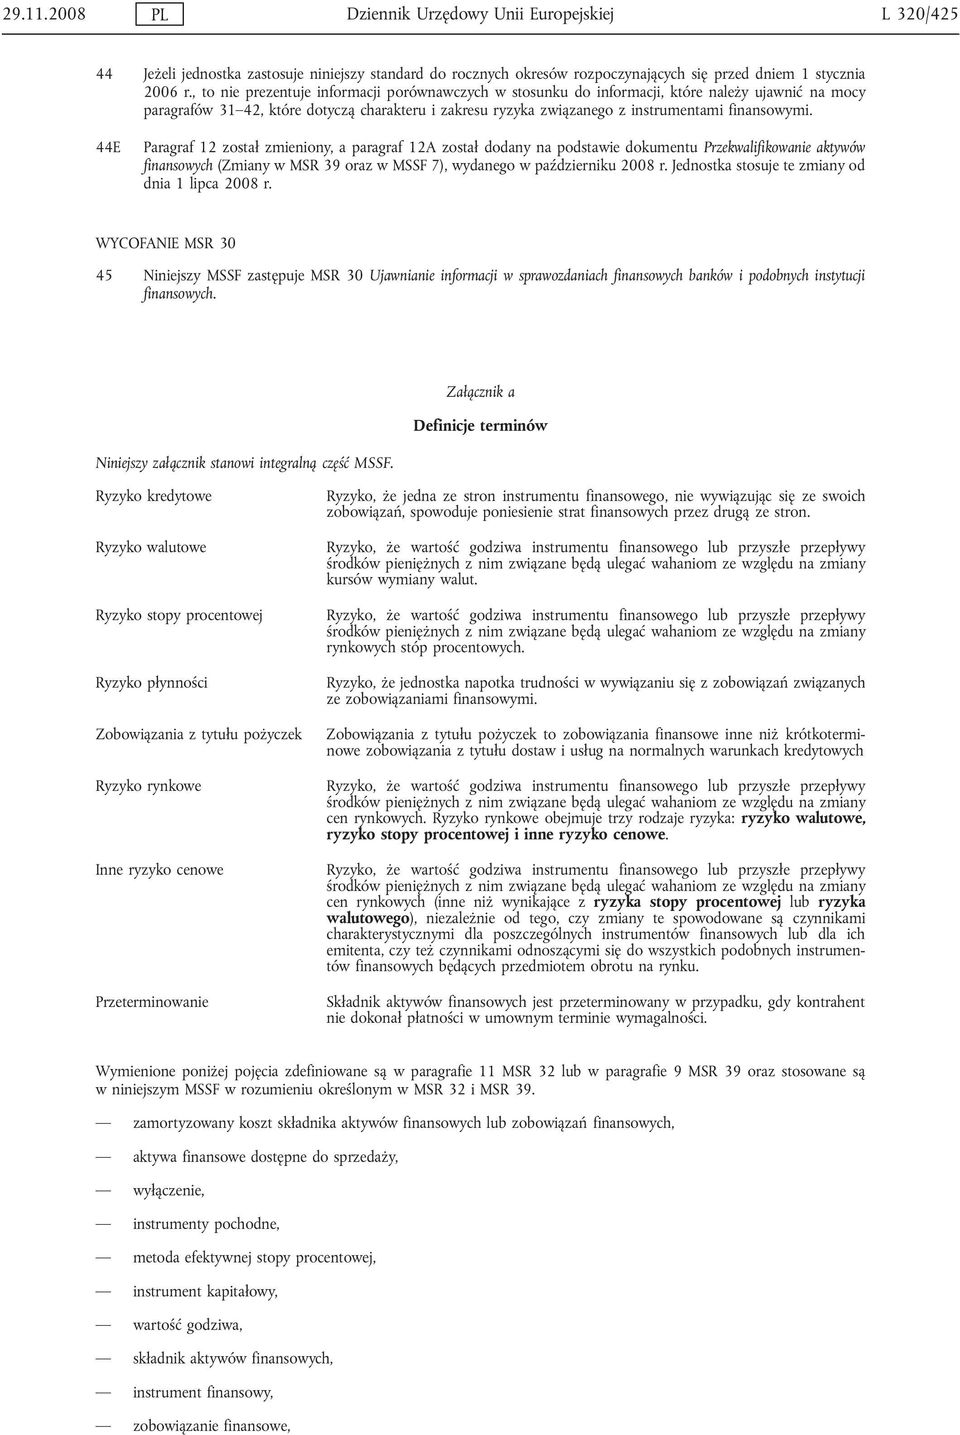 44E Paragraf 12 został zmieniony, a paragraf 12A został dodany na podstawie dokumentu Przekwalifikowanie aktywów finansowych (Zmiany w MSR 39 oraz w MSSF 7), wydanego w październiku 2008 r.